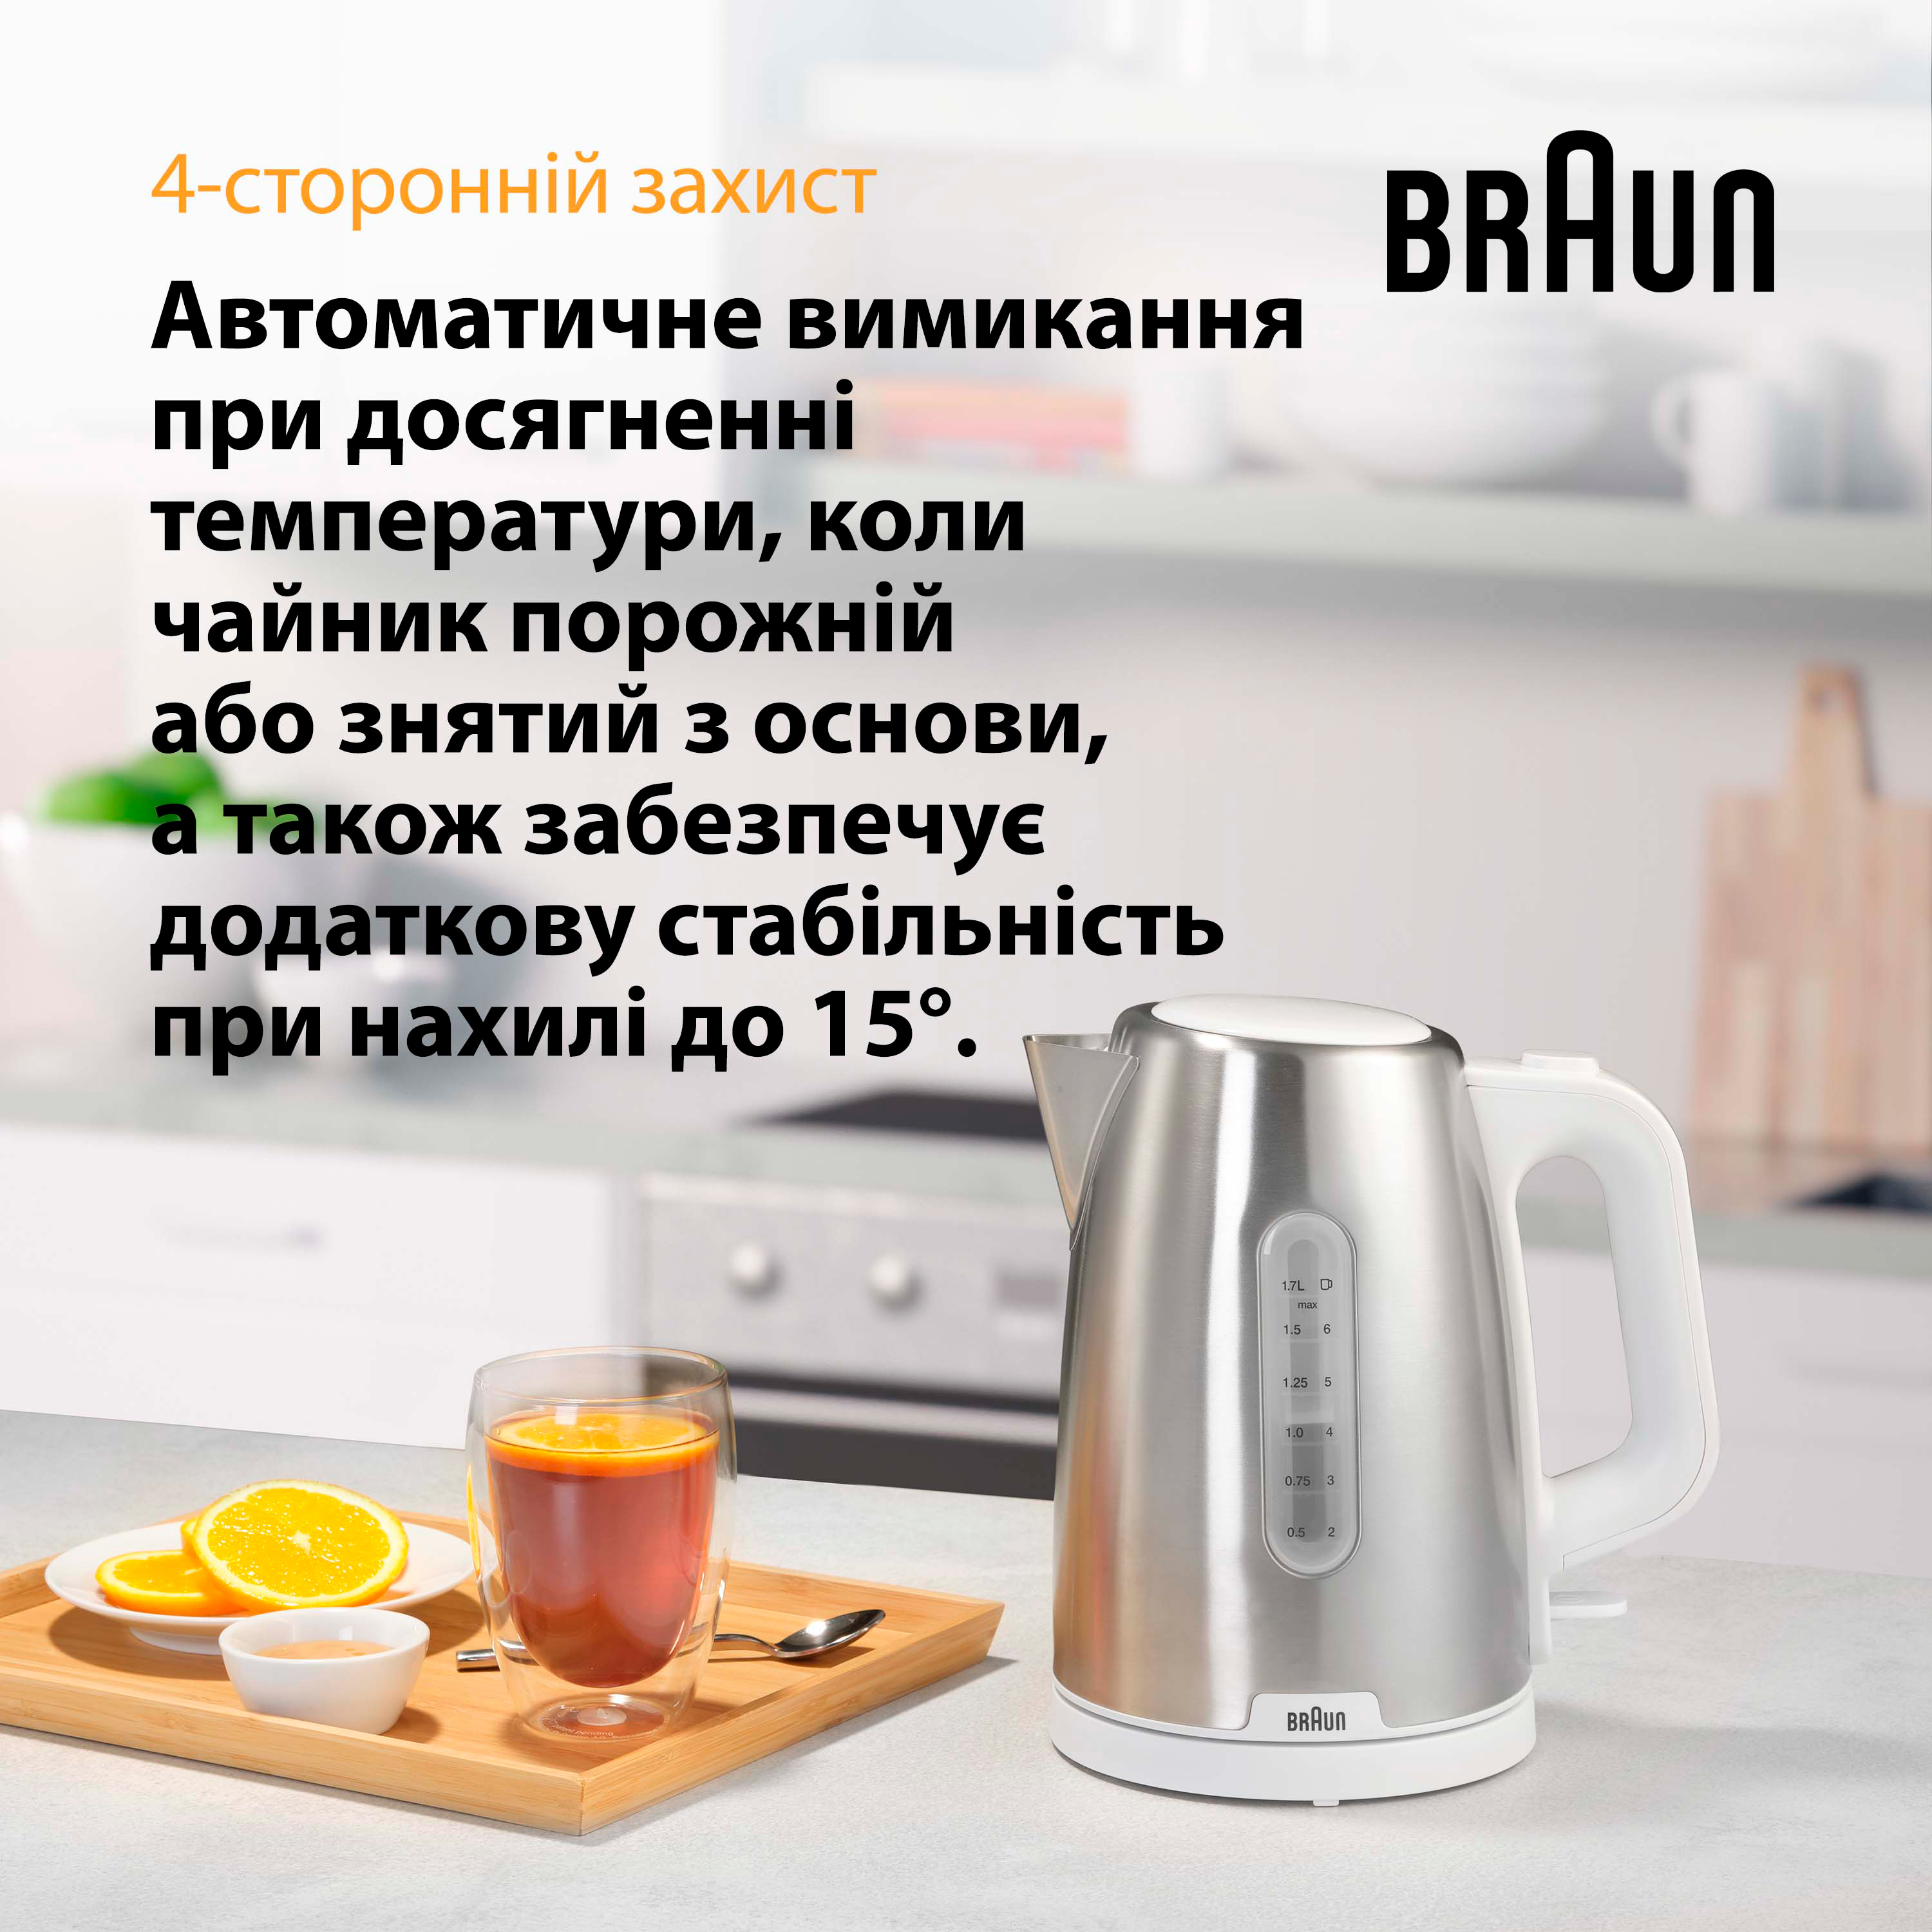 продаём Braun WK 1500 WH в Украине - фото 4